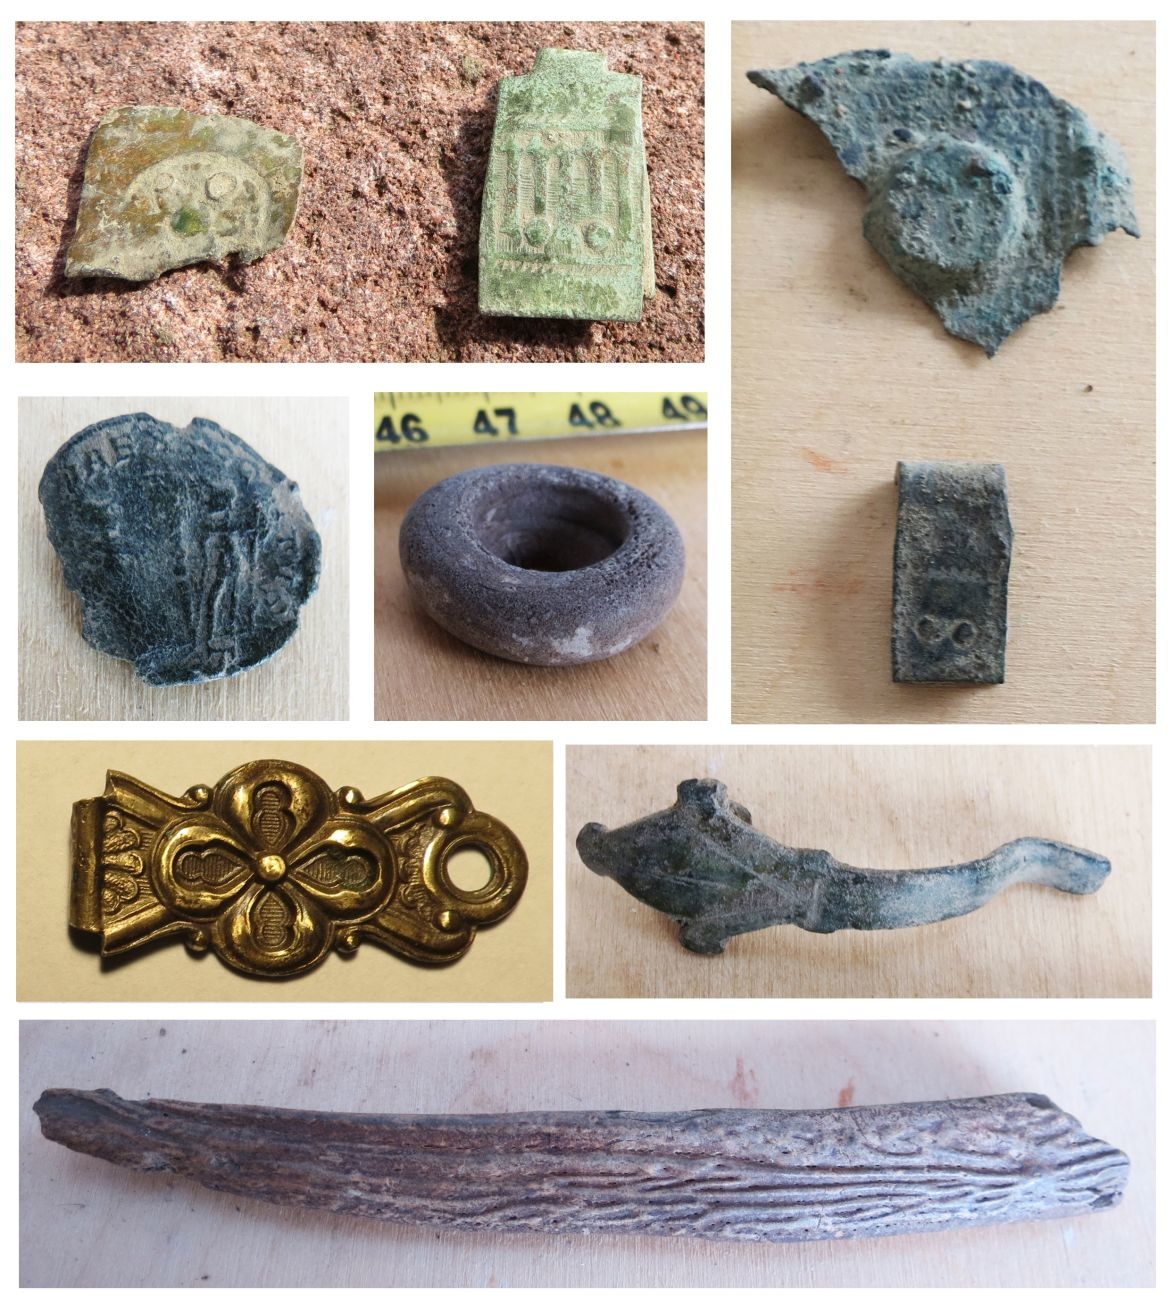 Válogatás az előkerült apróleletekből (könyvveretek és -kapcsok, egy római érem, egy üvegpalack szája, egy vasszerszám agancsnyele)
Forrás: ELKH